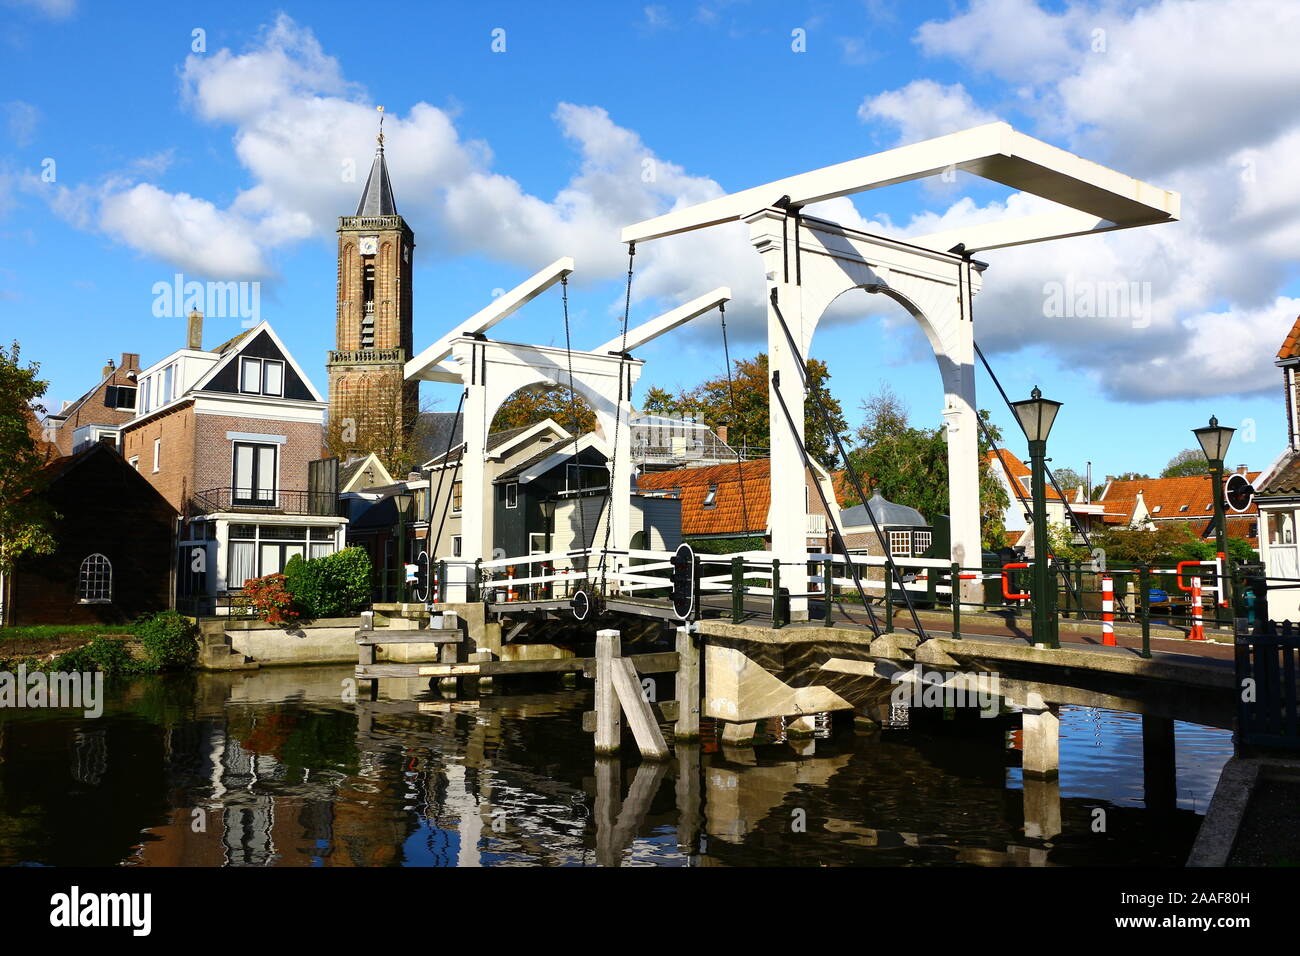 Blick auf eine Traditionelle Holzbrücke in Nordholland Stock Photo